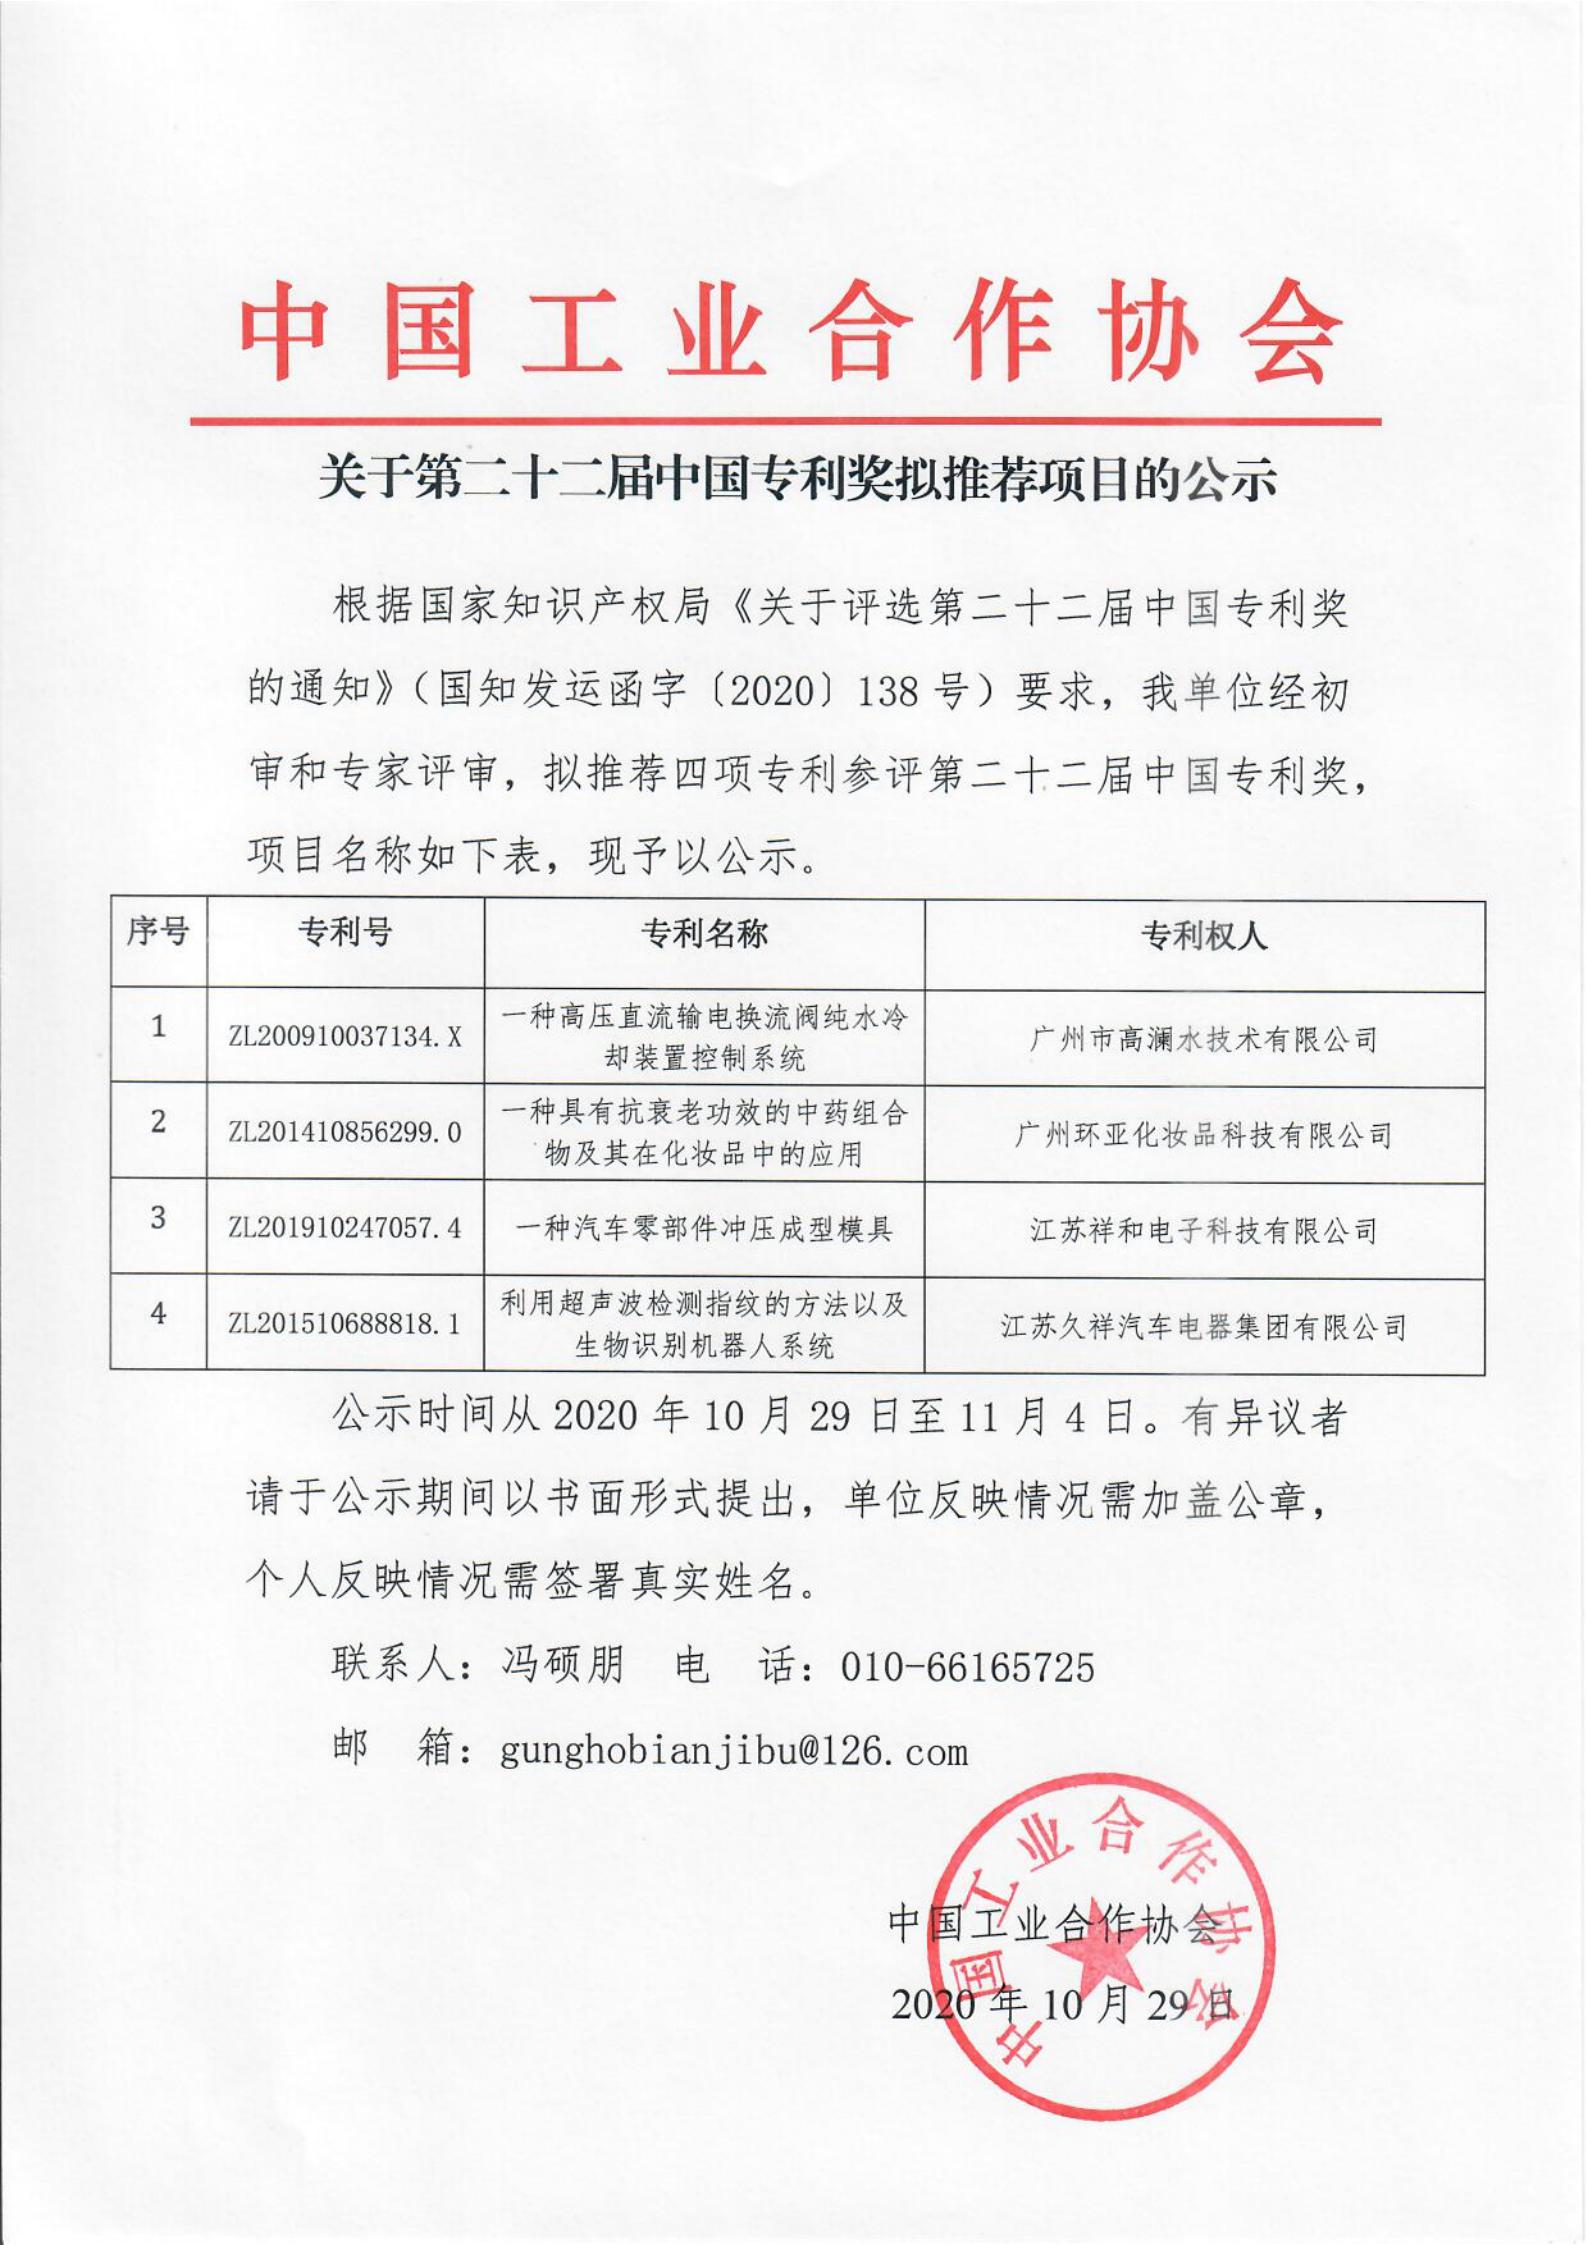 关于第二十二届中国专利奖拟推荐项目的公示_00.jpg